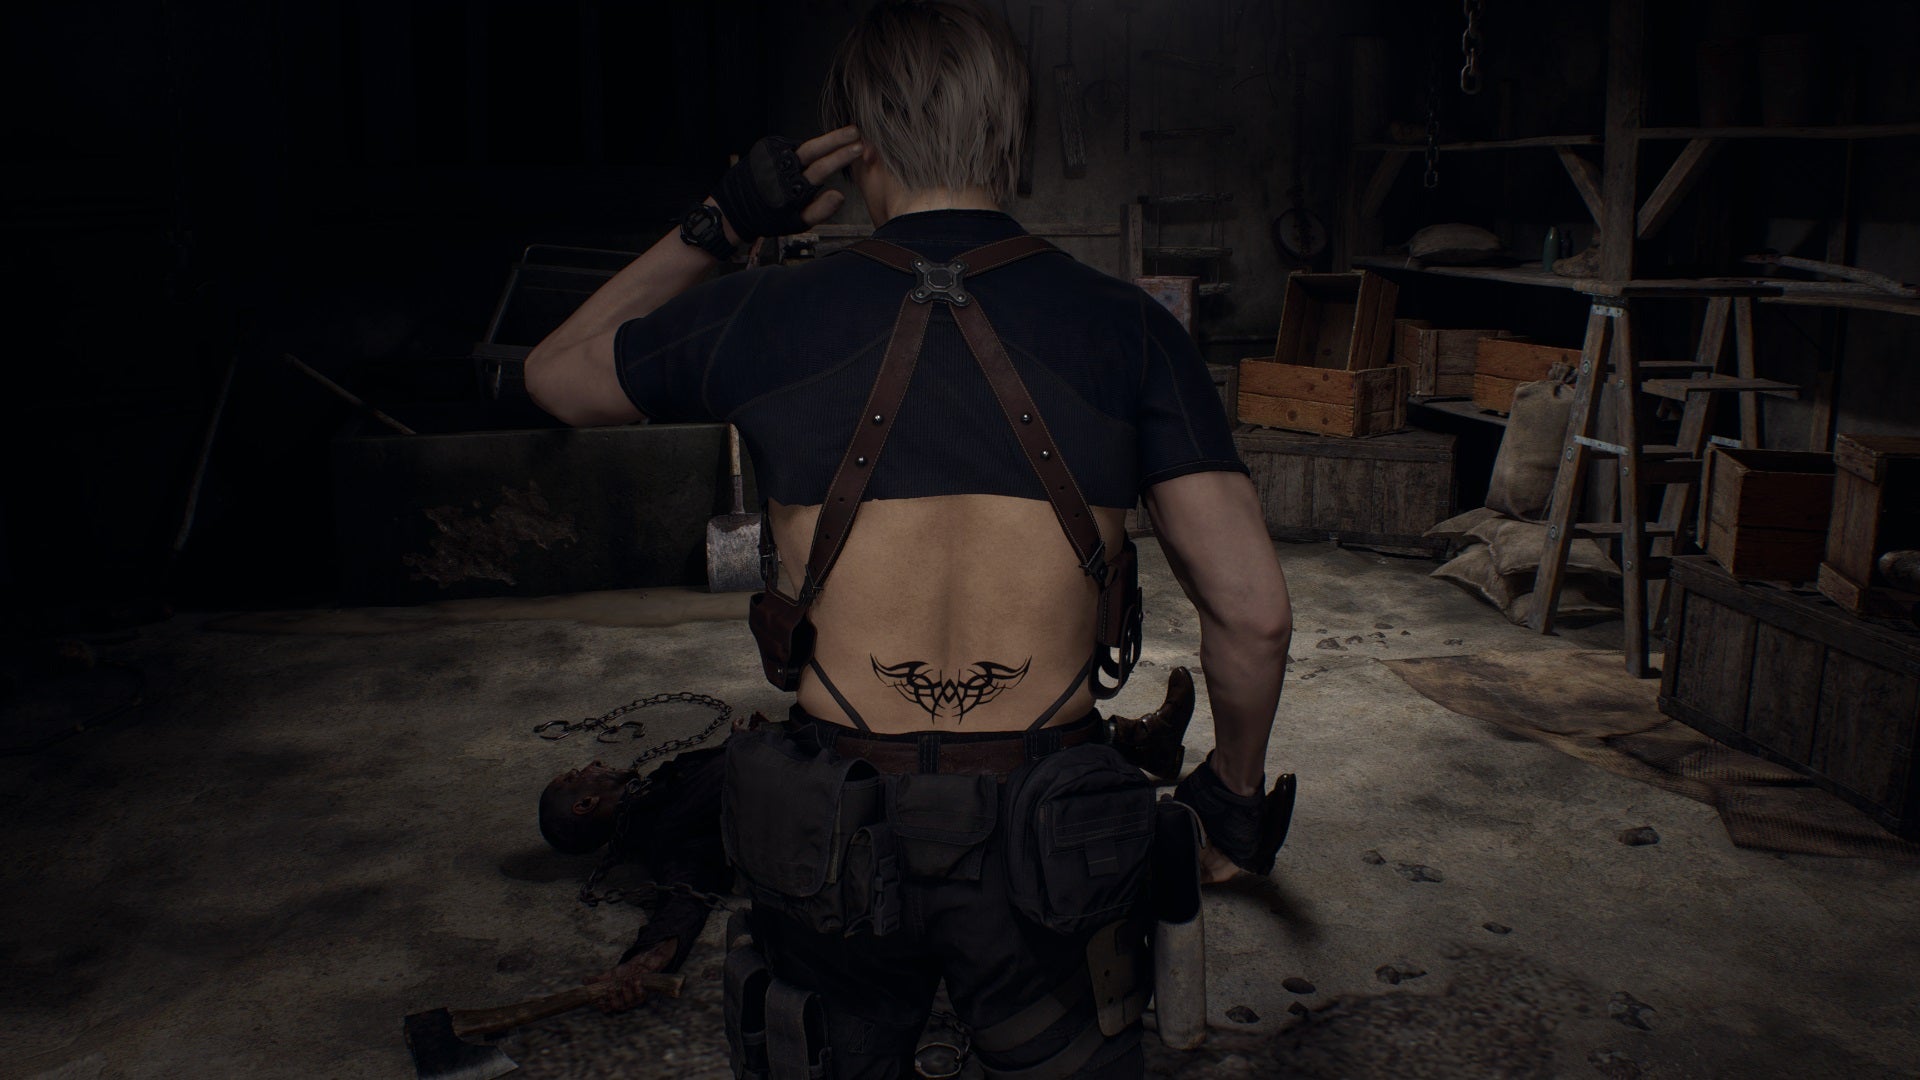 Entrevista: “The Last of Us”, da HBO, tem o desafio de replicar a  excelência do jogo original